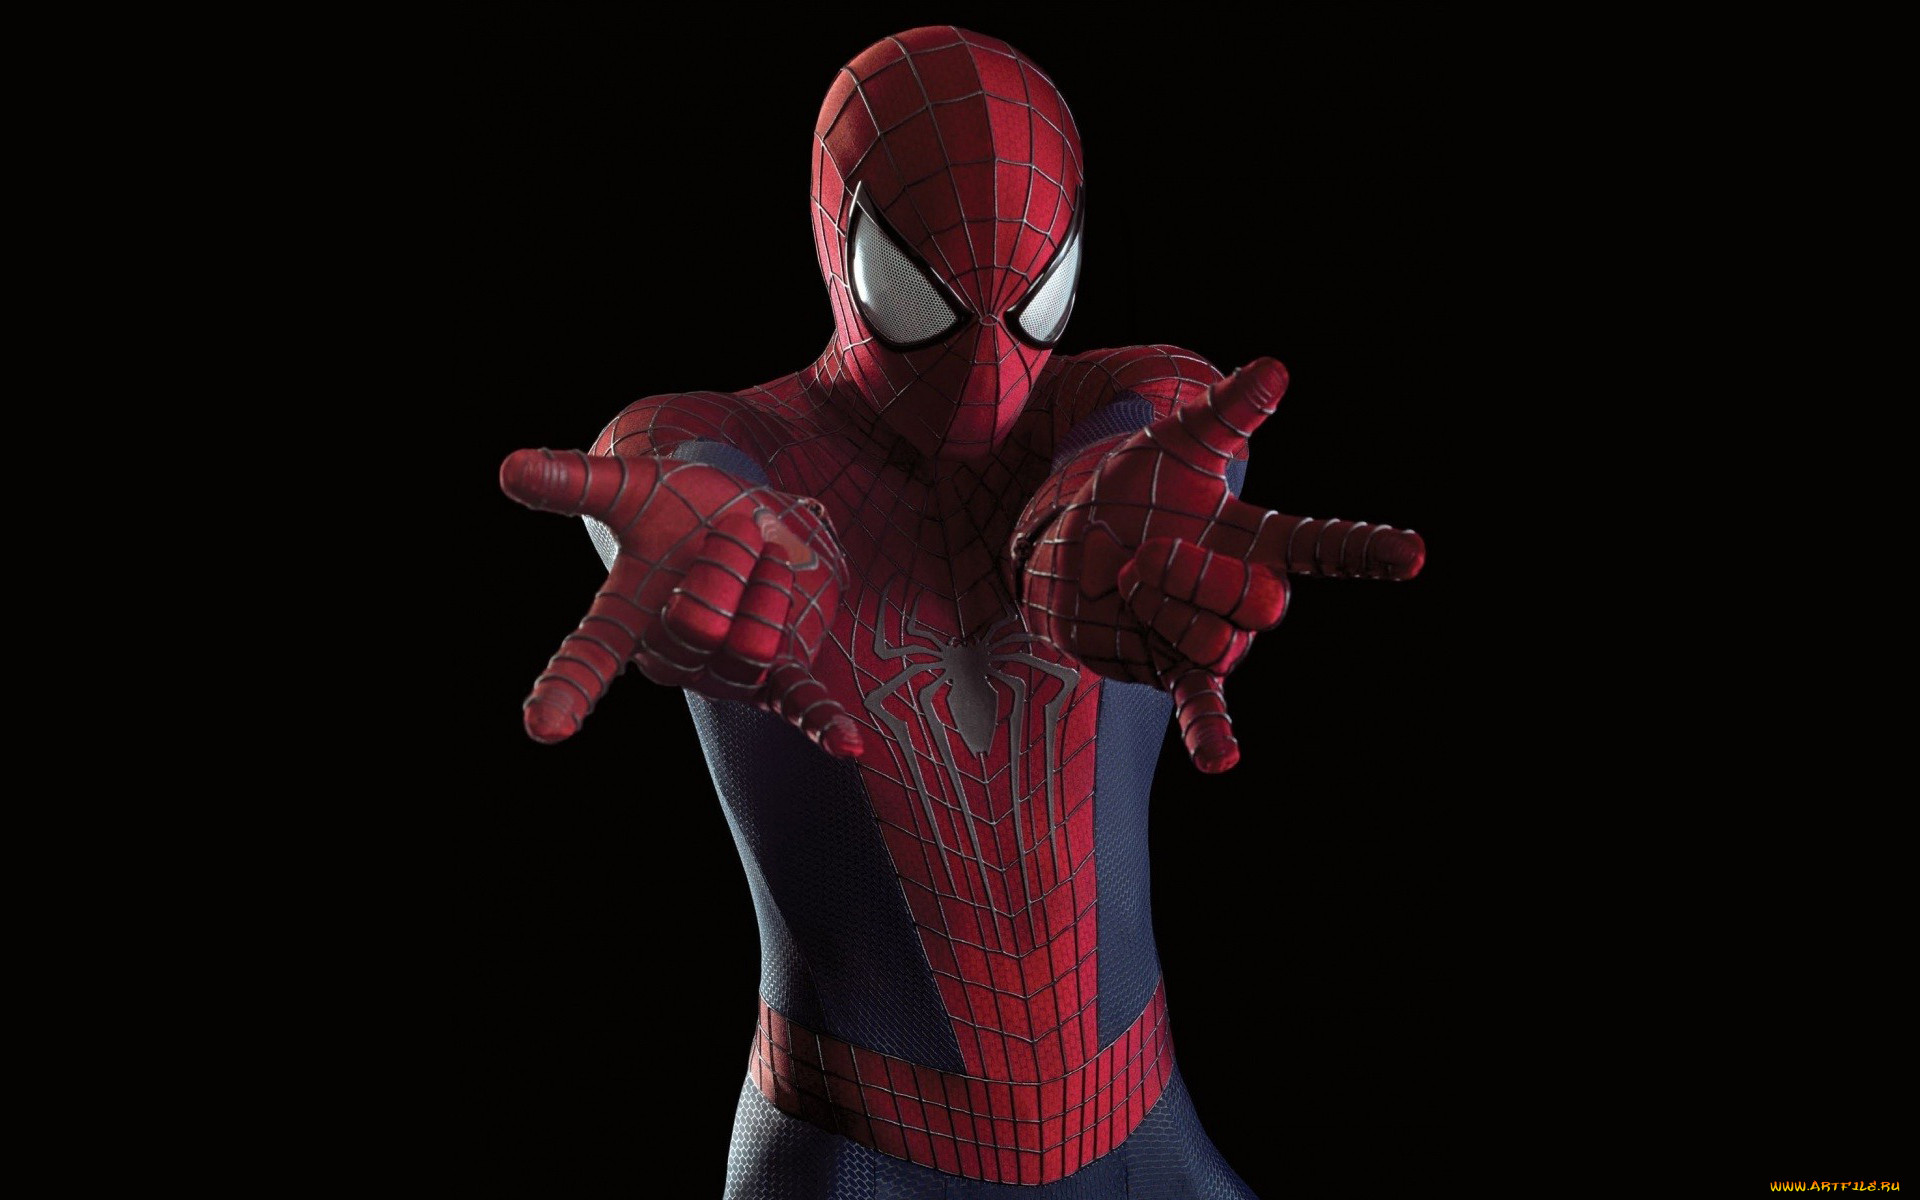  -  ,  , the amazing spider-man 2, , -, , , the, amazing, spider-man, 2